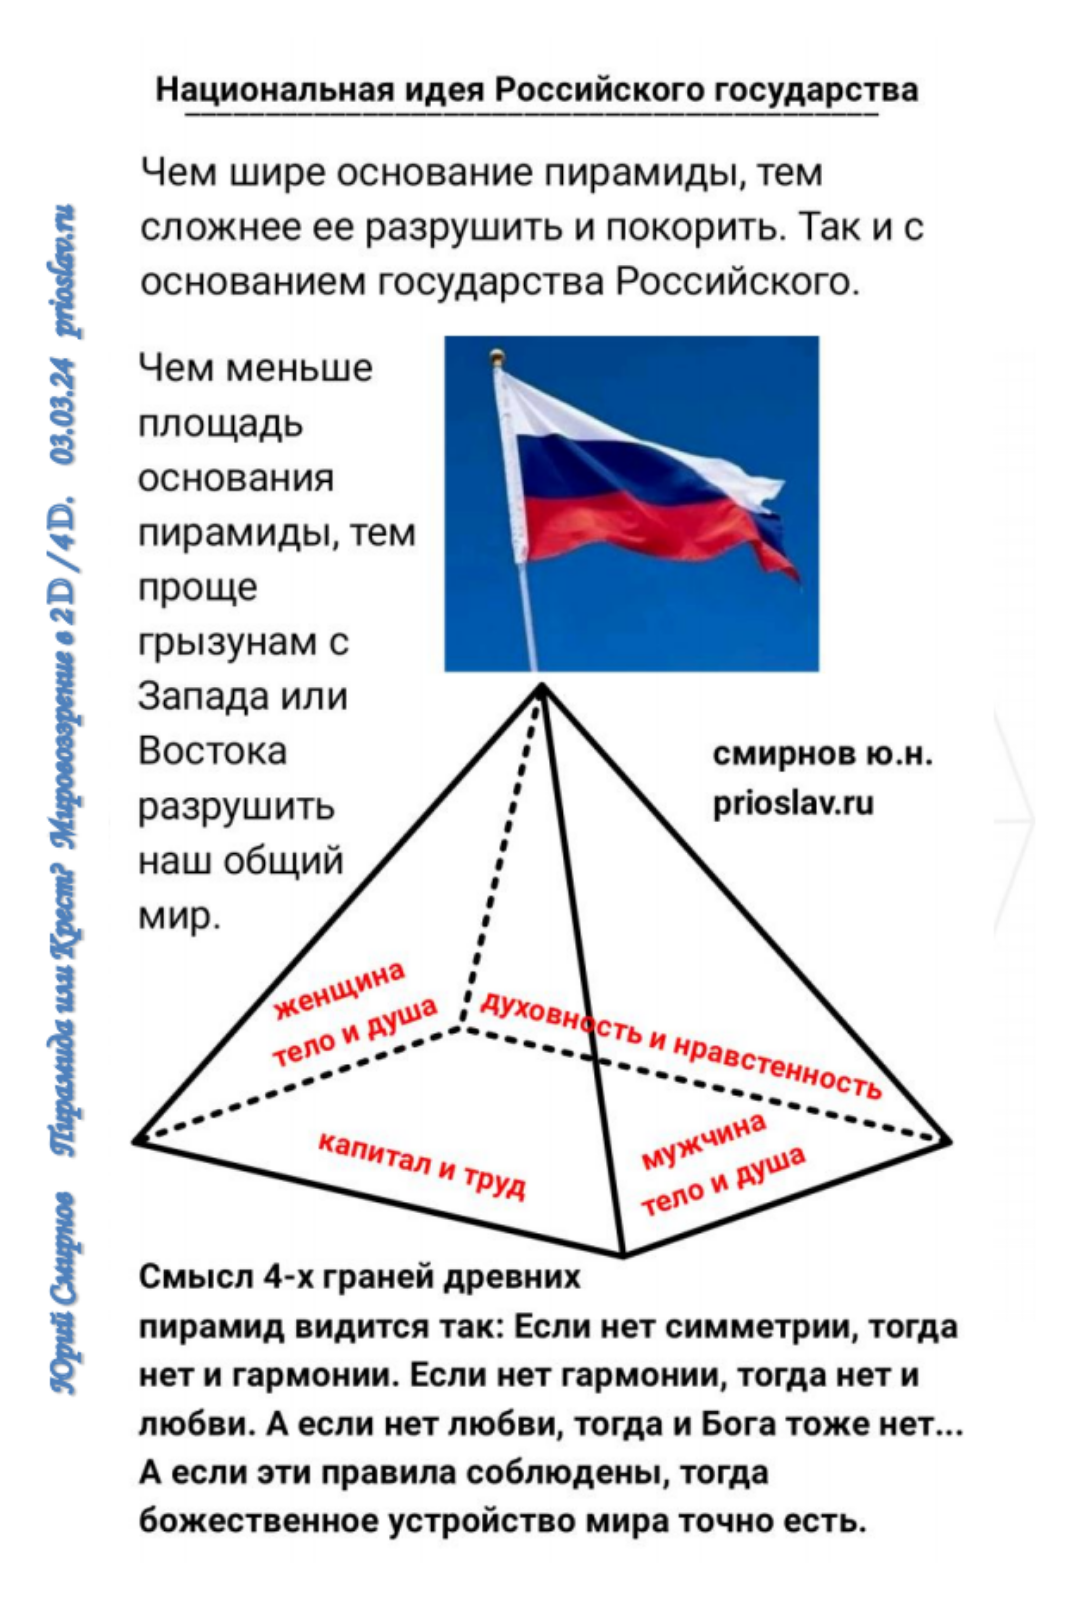 Правило жизни - национальная идея России